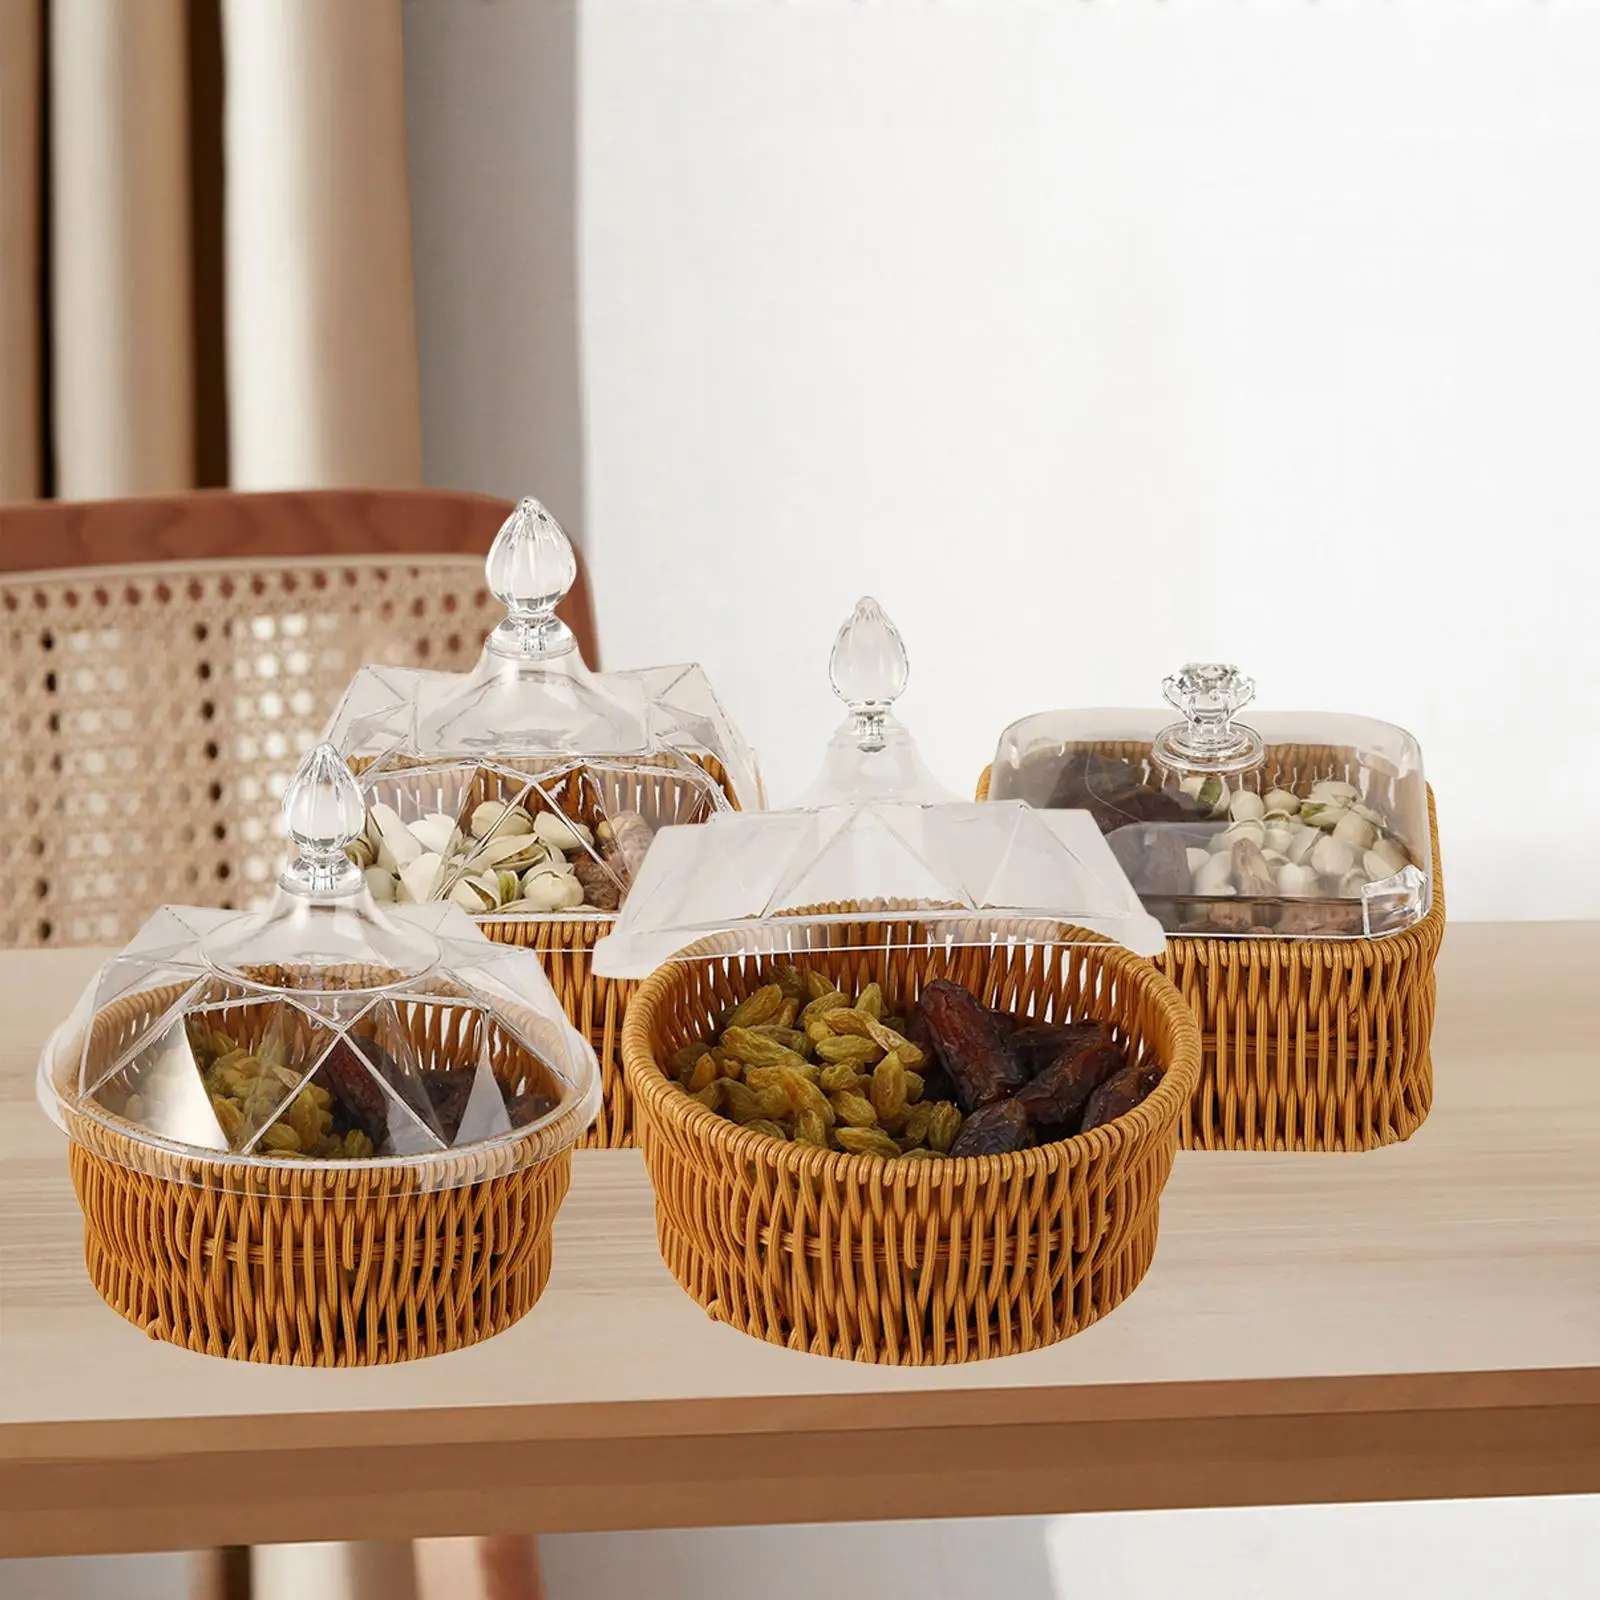 Wicker Basket Key Holder Storage Bowls Serving Tray Multipurpose Fruit Bowl Vegetable Basket for Home Room Shelf Kitchen